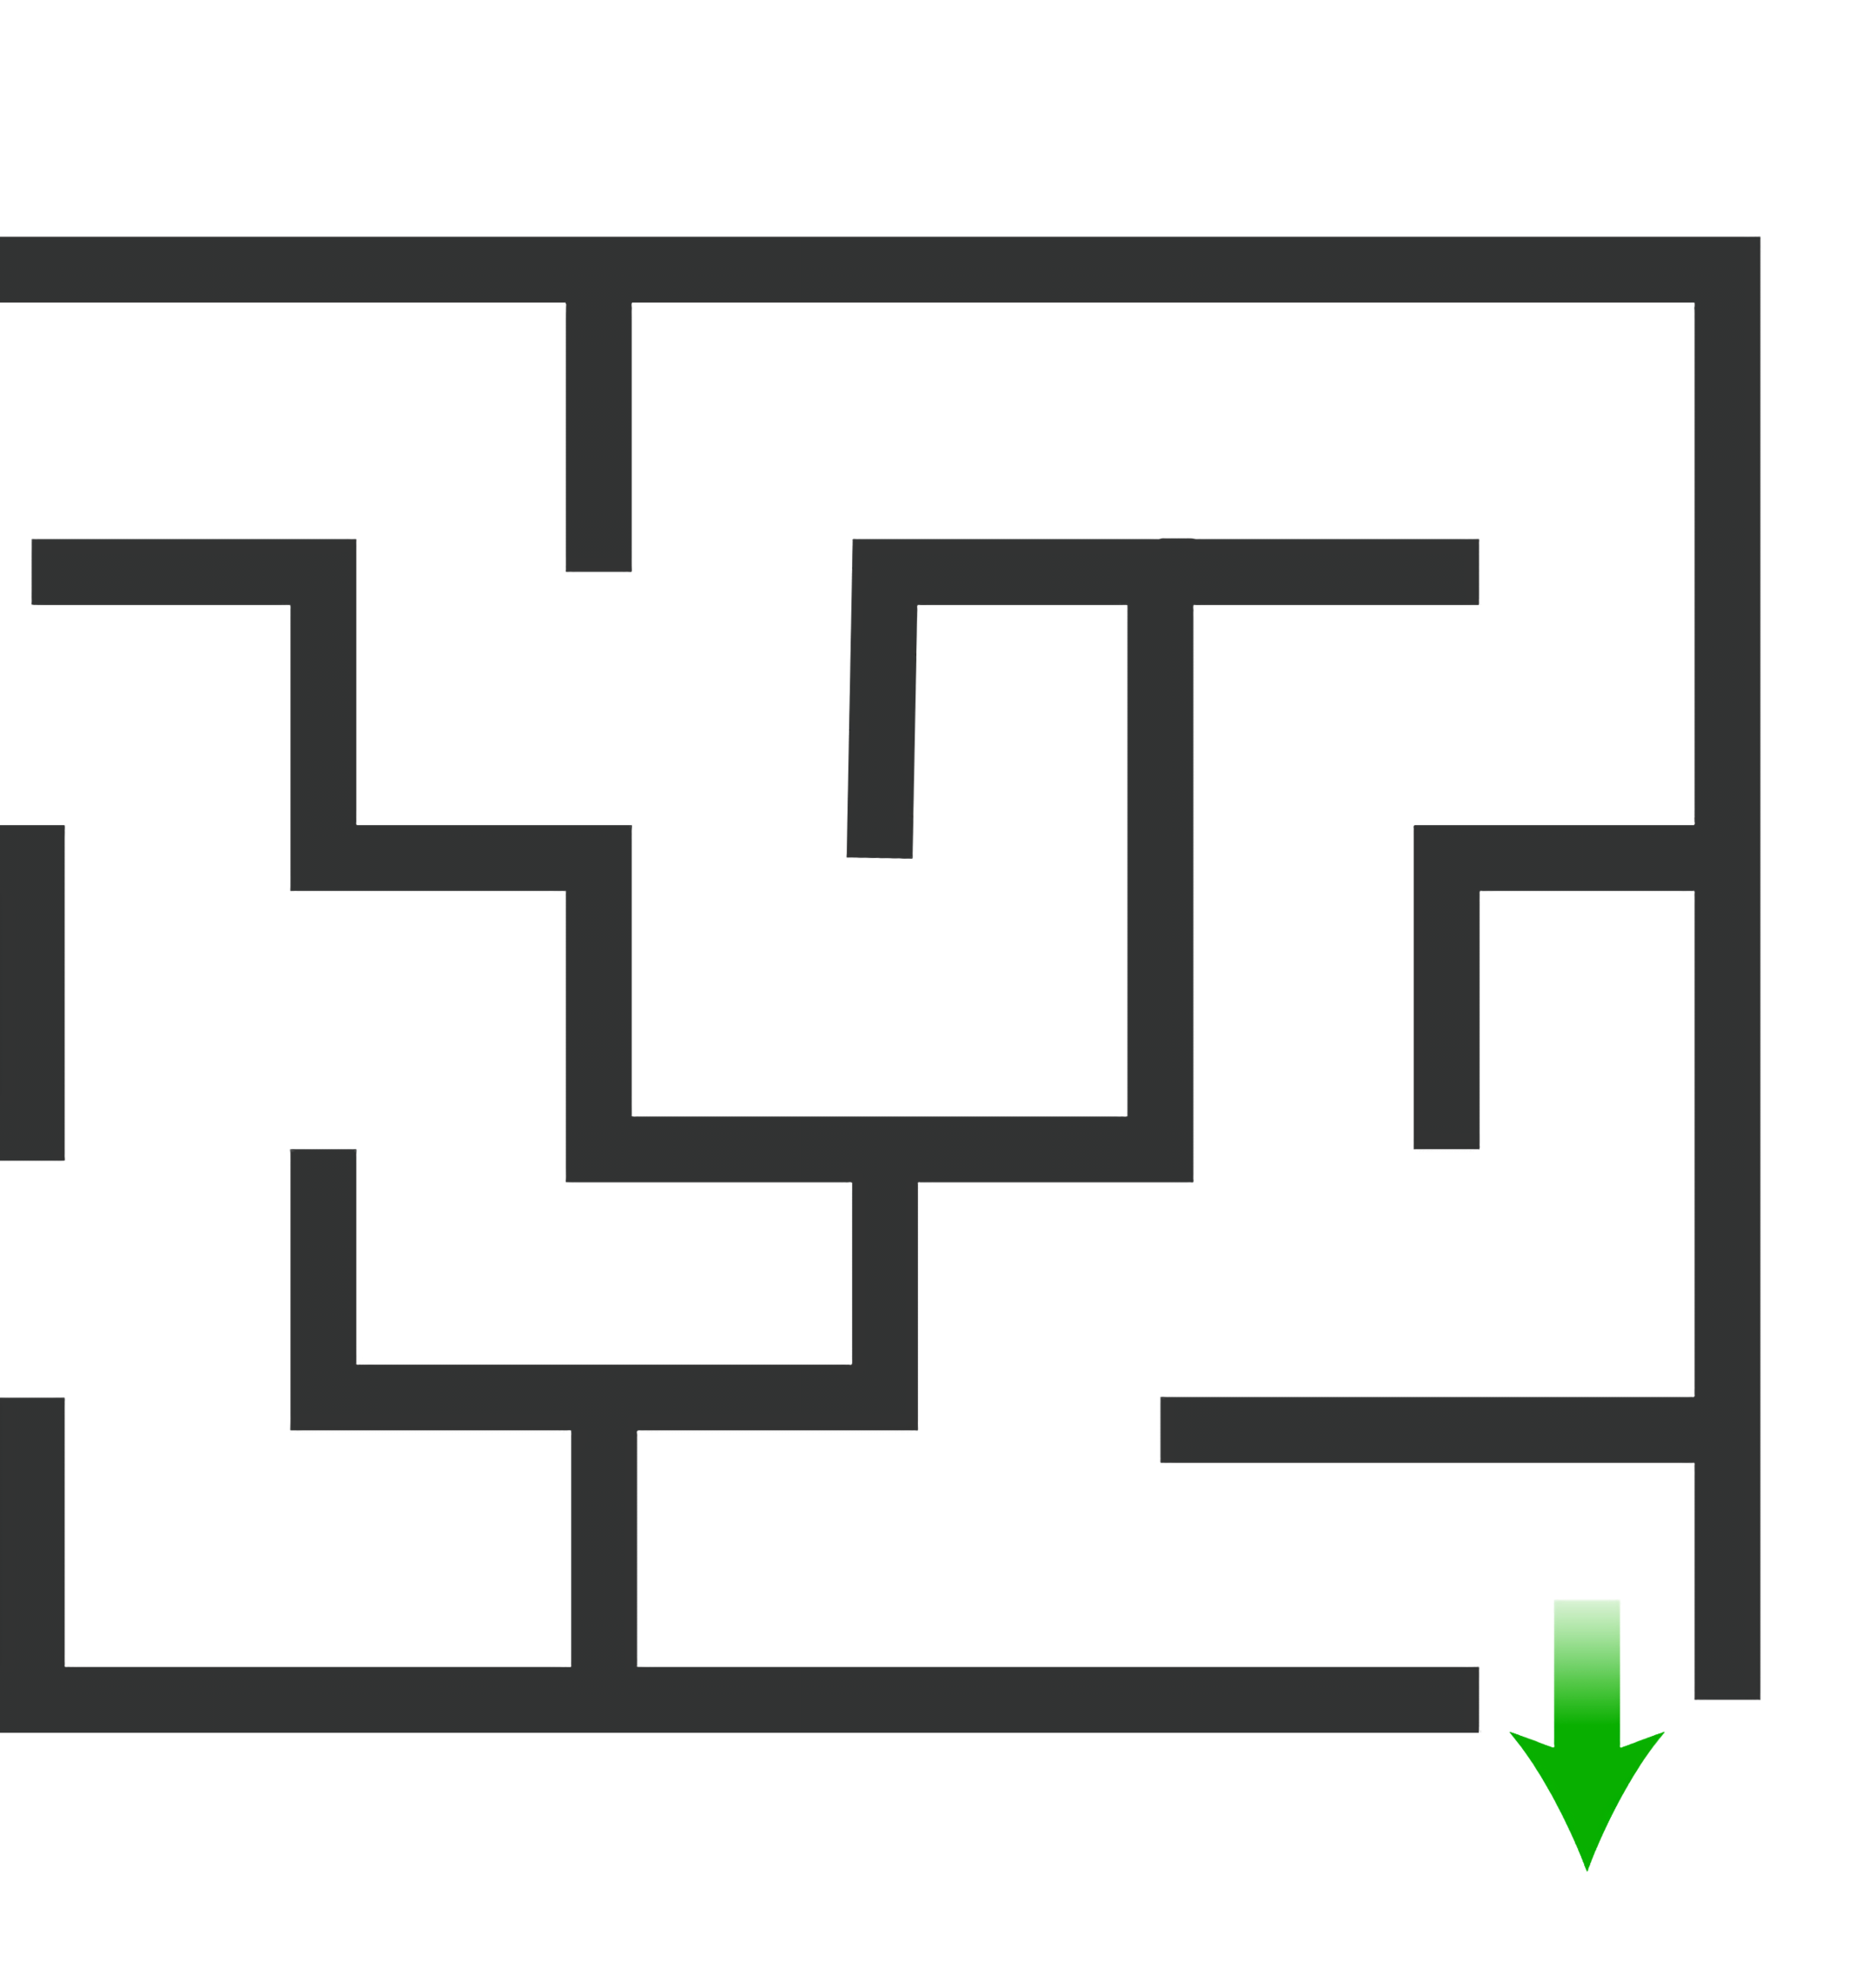 Giochi del labirinto